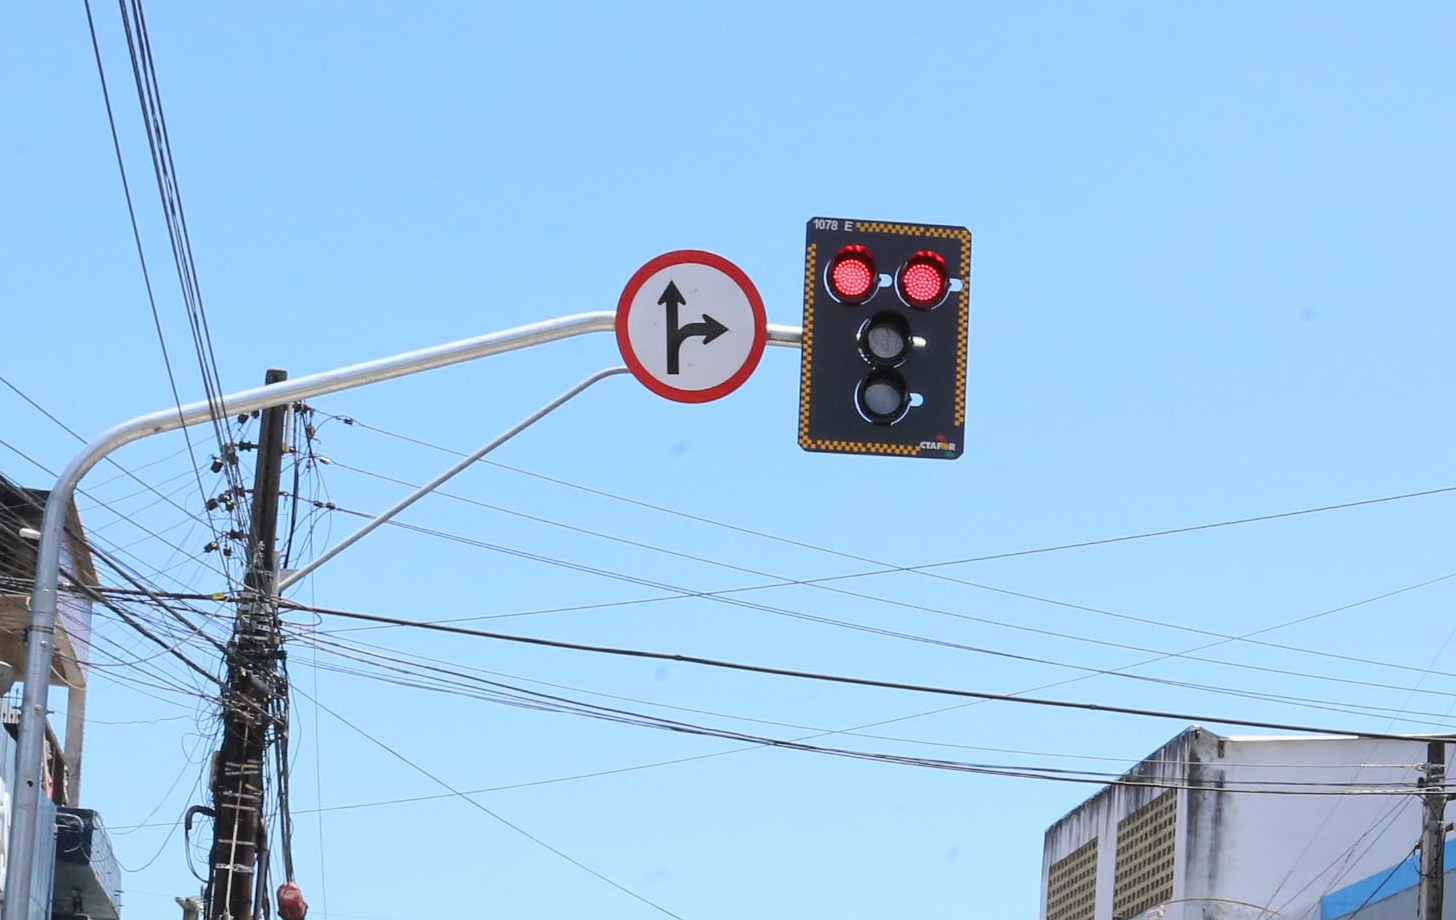 Fóruns Territoriais de Fortaleza - Fórun Territorial Papicu, Varjota e De Lourdes - Novo sensor instalado em semáforo garante travessia segura aos pedestres